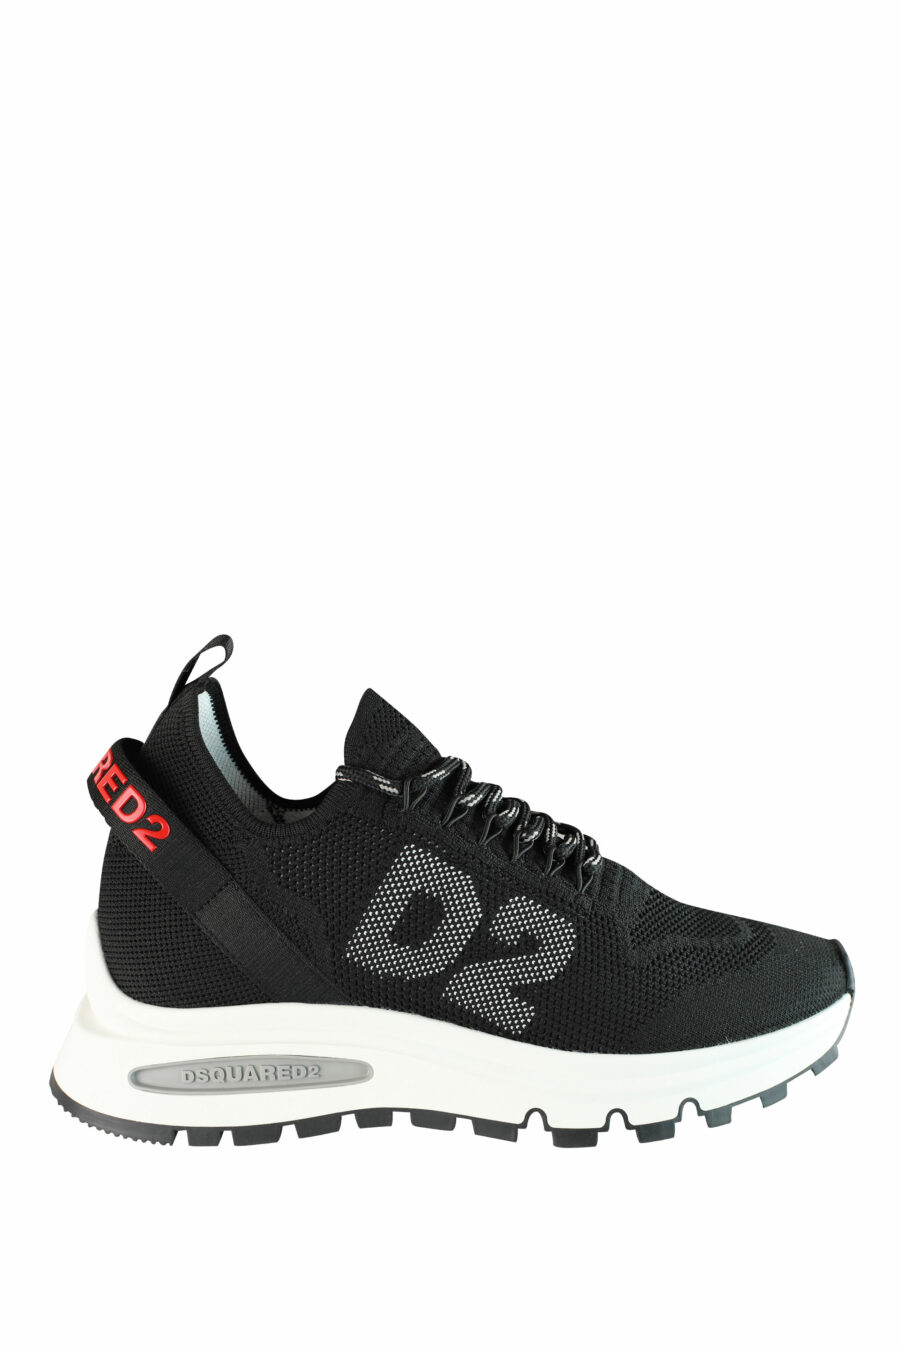 Zapatillas negras "Run D2" con logo en rojo - IMG 1414